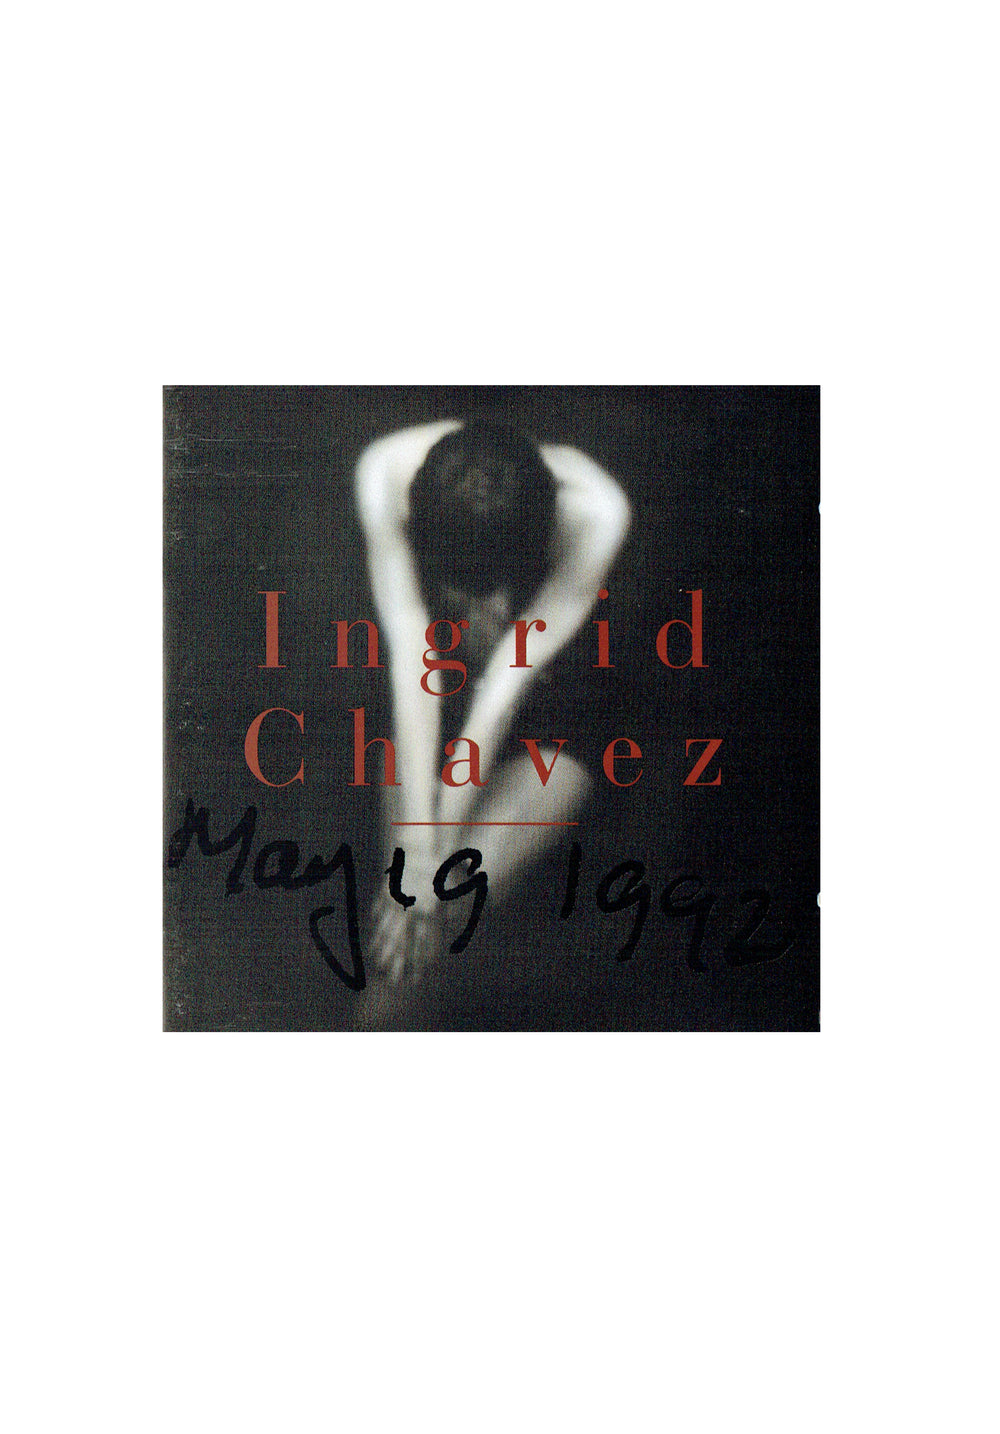 Prince – Ingrid Chavez – May, 19, 1992 CD Album Europe Preloved: 1992